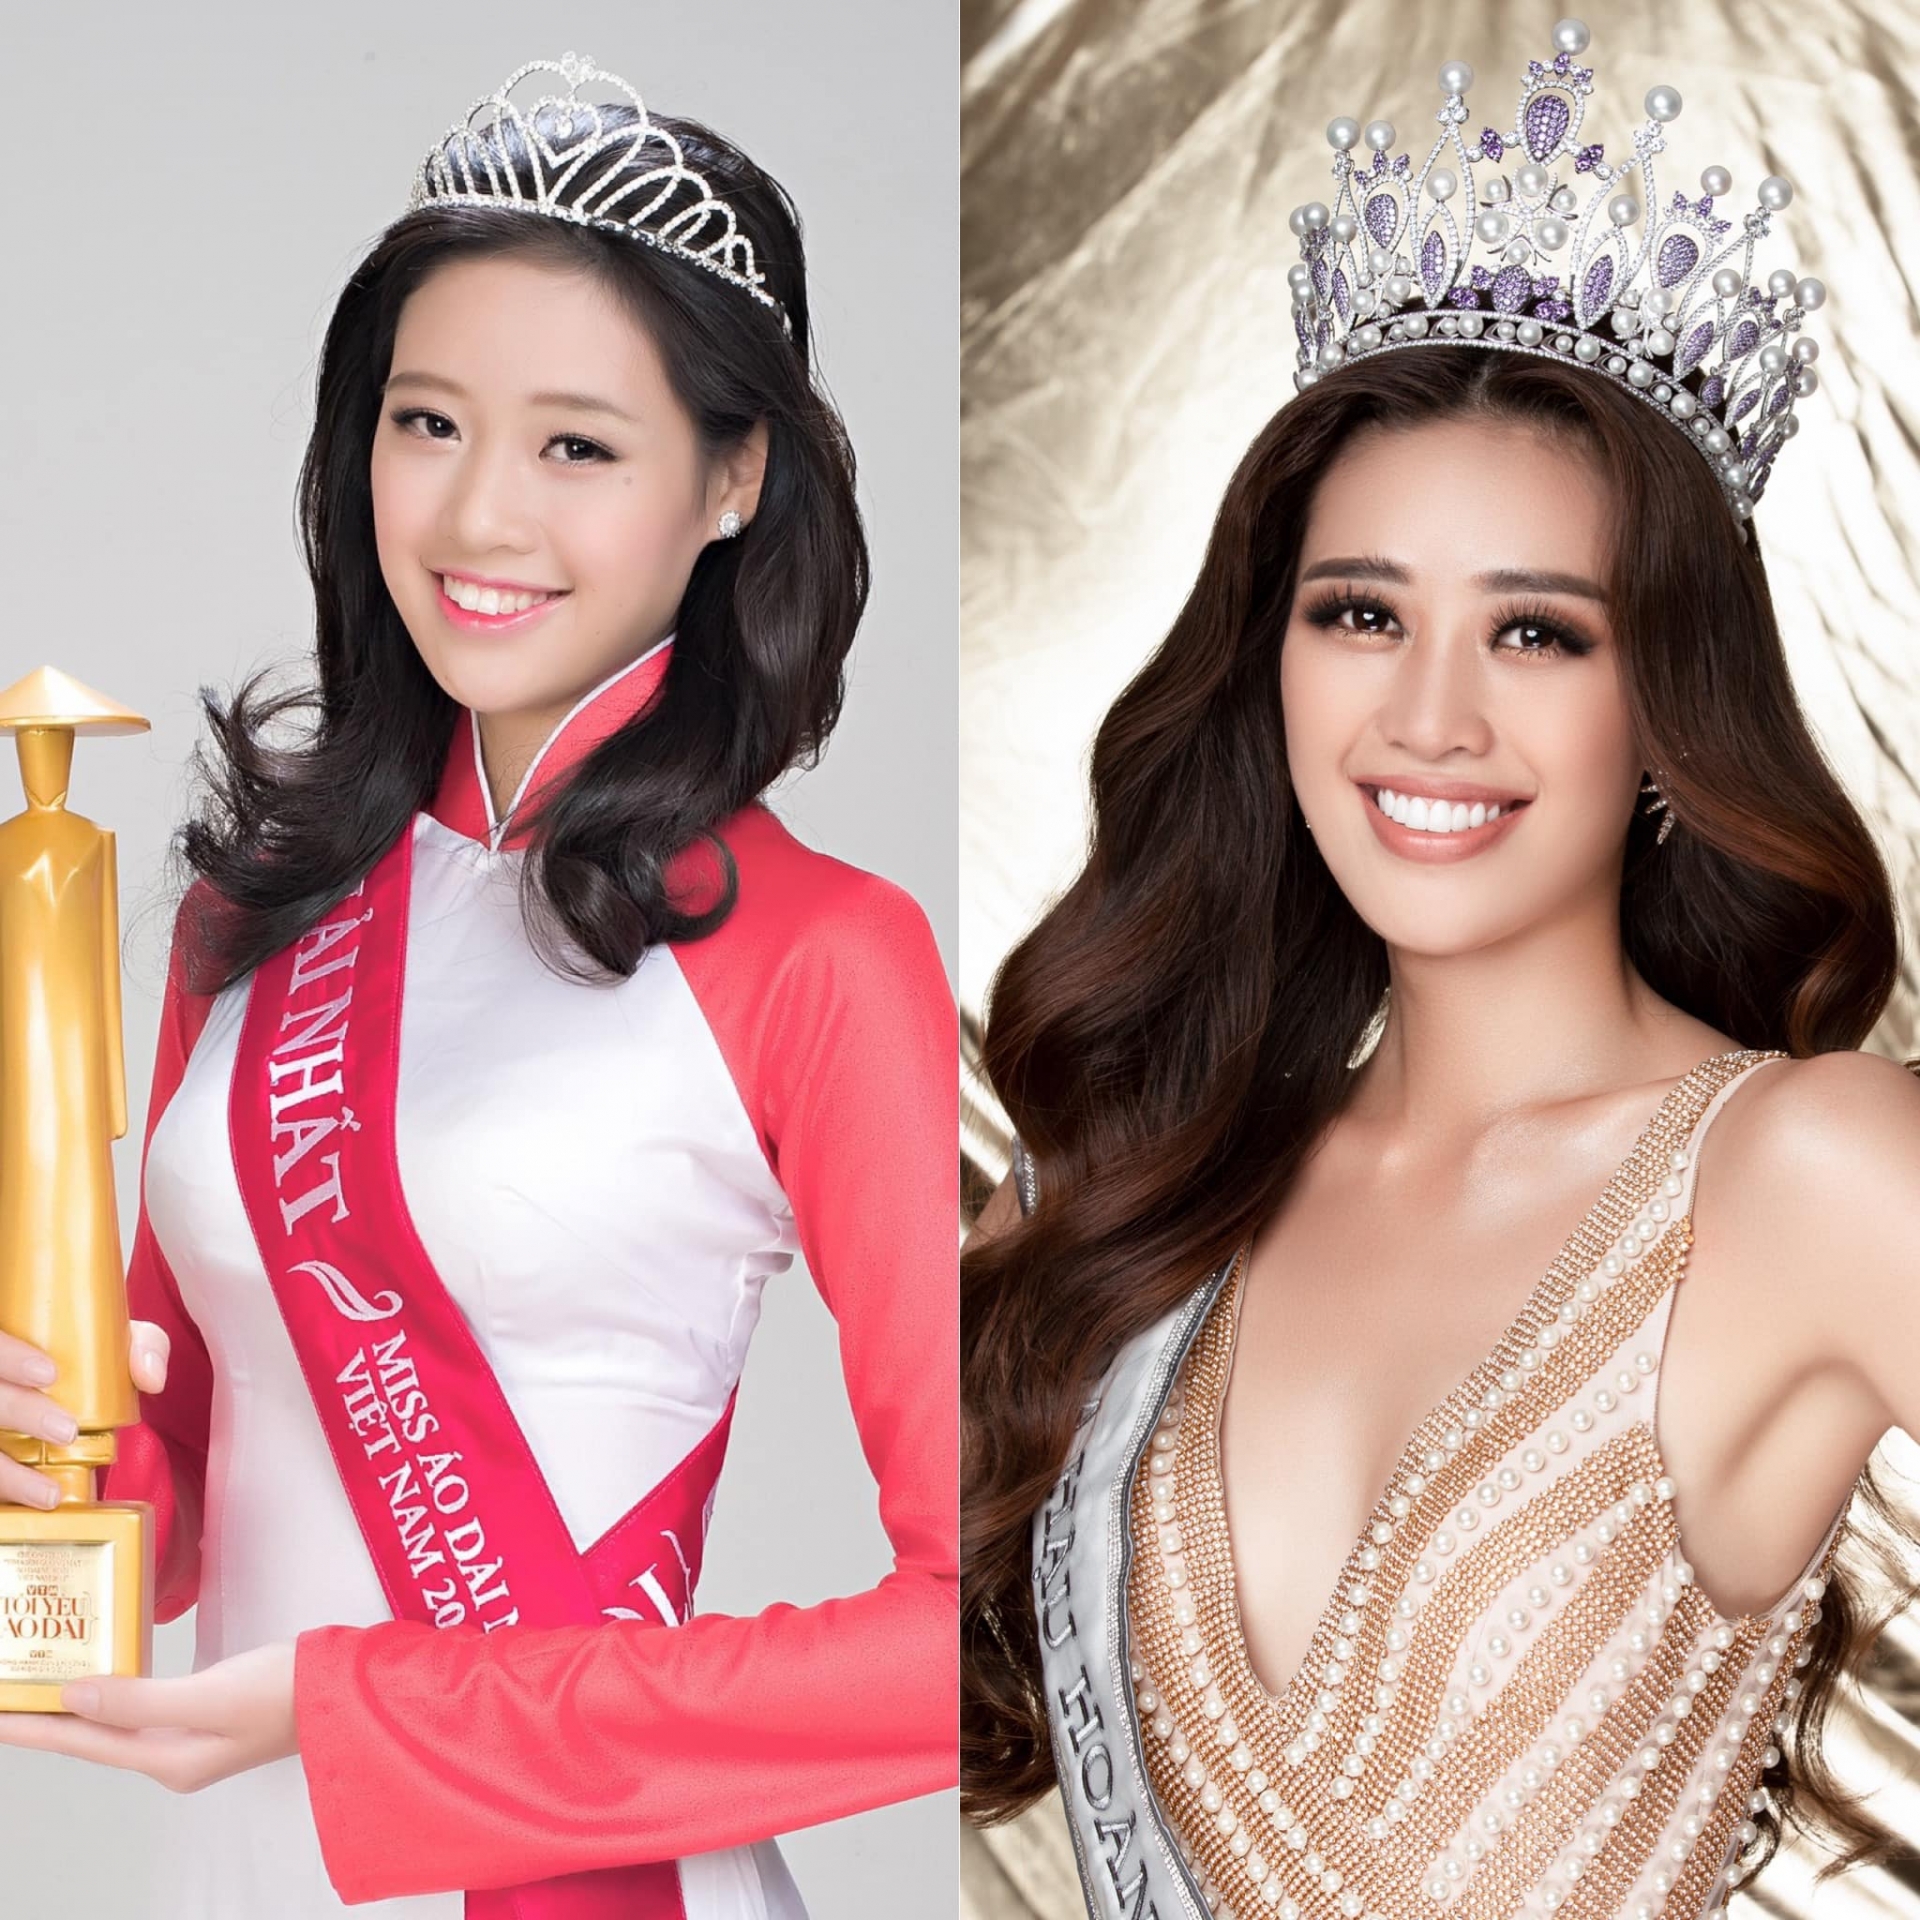 Khánh Vân chia sẻ hình ảnh so sánh lúc cô đăng quang danh hiệu Miss Áo dài năm 2013 và Hoa hậu Hoàn vũ Việt Nam 2019. Có thể thấy, nàng hậu hiện tại vẫn giữ được vẻ ngoài rạng rỡ, nụ cười tươi tắn nhưng đã có sự trưởng thành, quyến rũ vượt bậc.